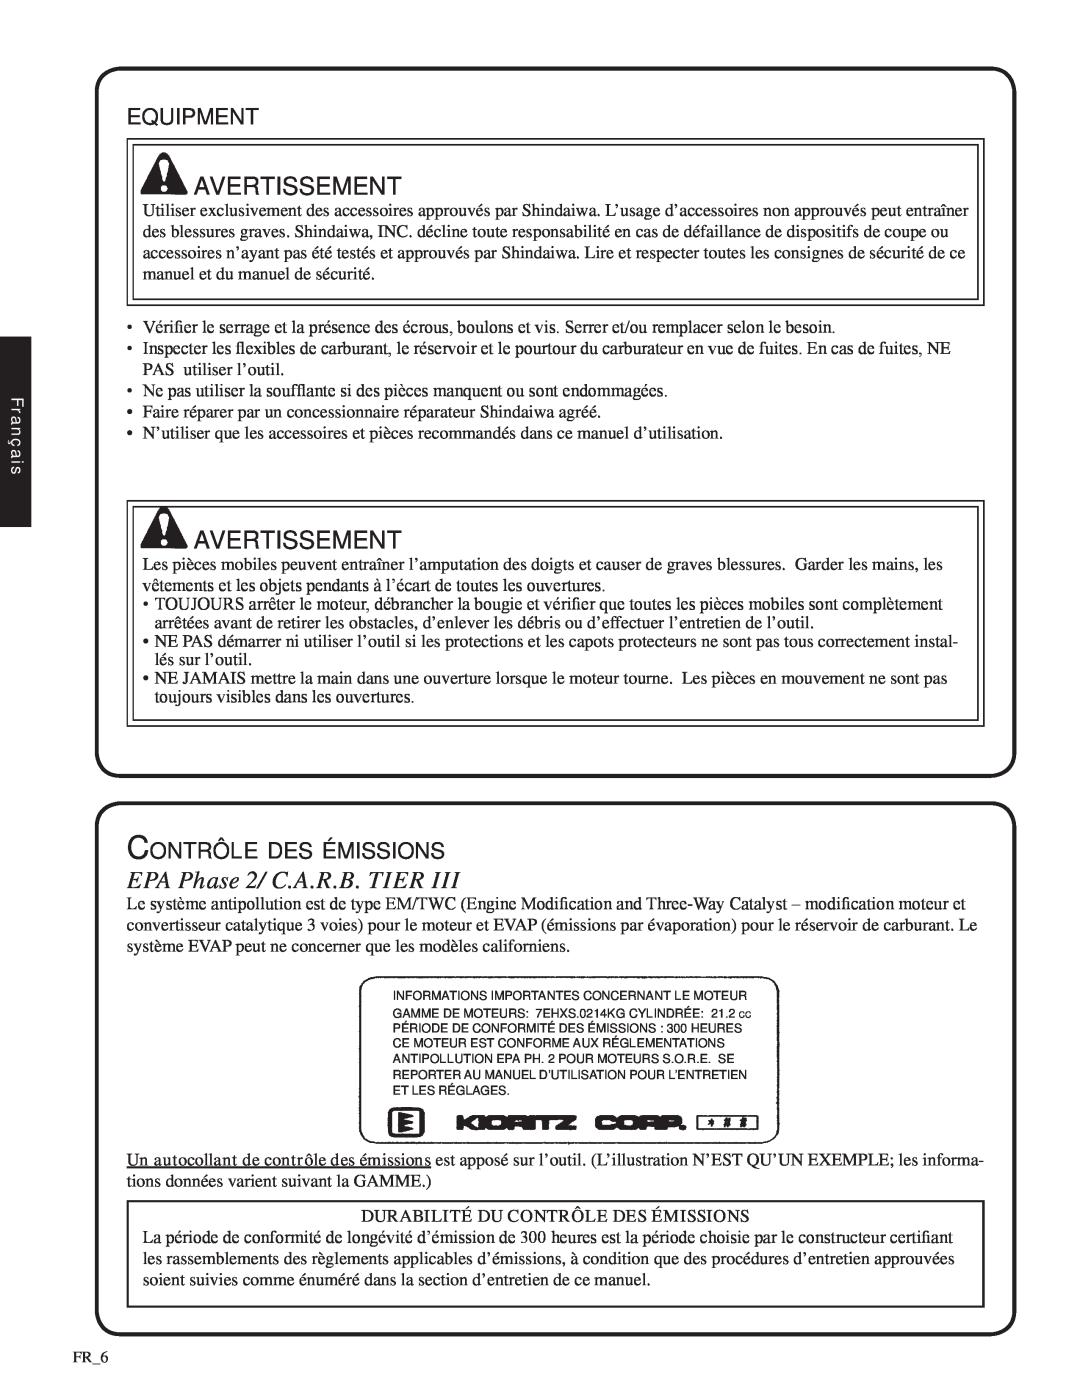 Shindaiwa SV212, 82052 manual EPA Phase 2/ C.A.R.B. TIER, equipment, Contrôle des émissions, Avertissement, Français 